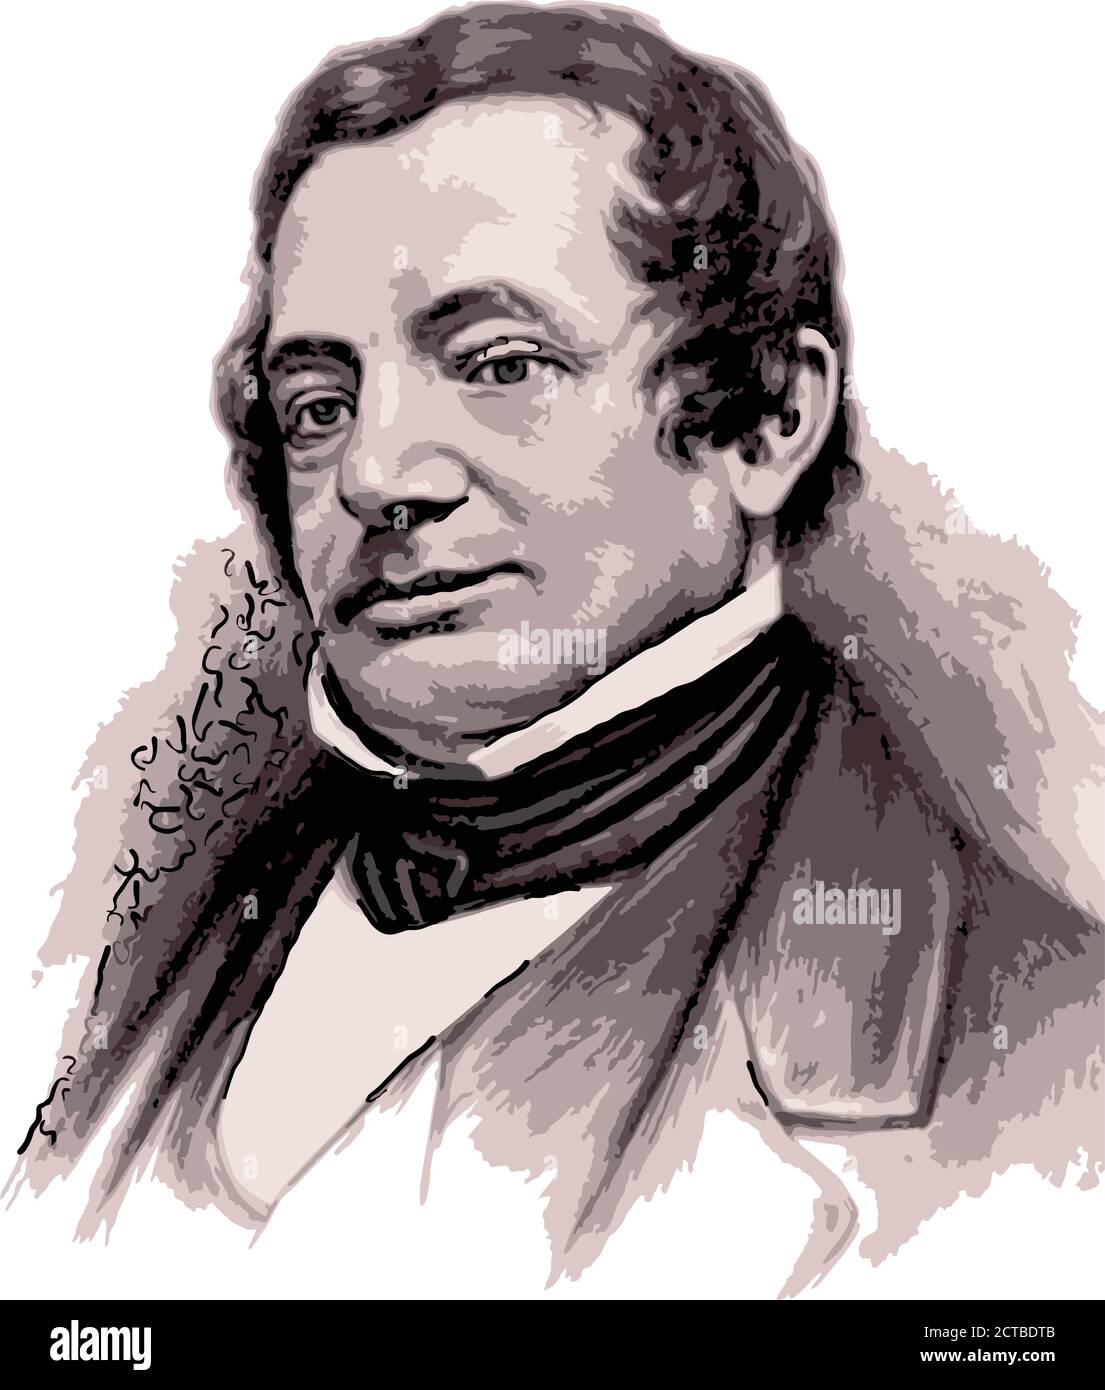 Vektor-Porträt von Washington Irving. Washington Irving (1783 – 1859) war ein amerikanischer Kurzgeschichtenautor, Essayist, Biograph, Historiker und Diplom Stock Vektor